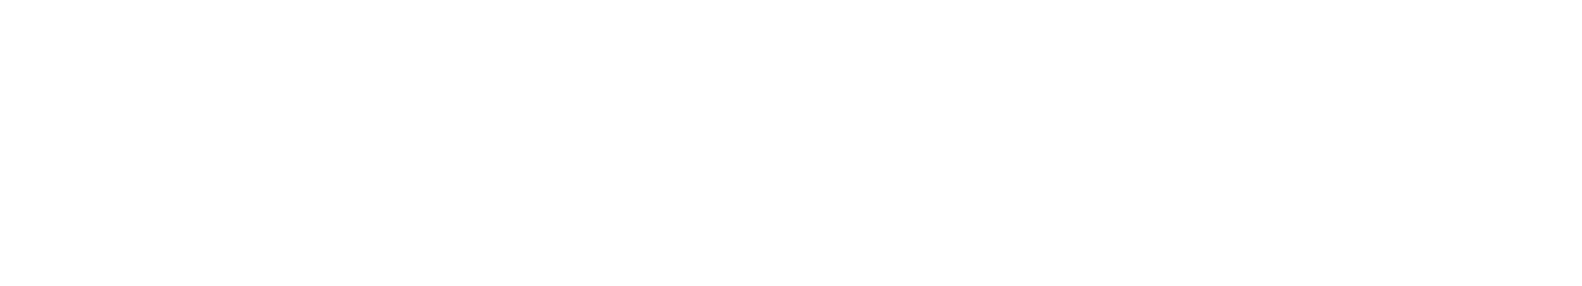 Century Communities
 Logo groß für dunkle Hintergründe (transparentes PNG)